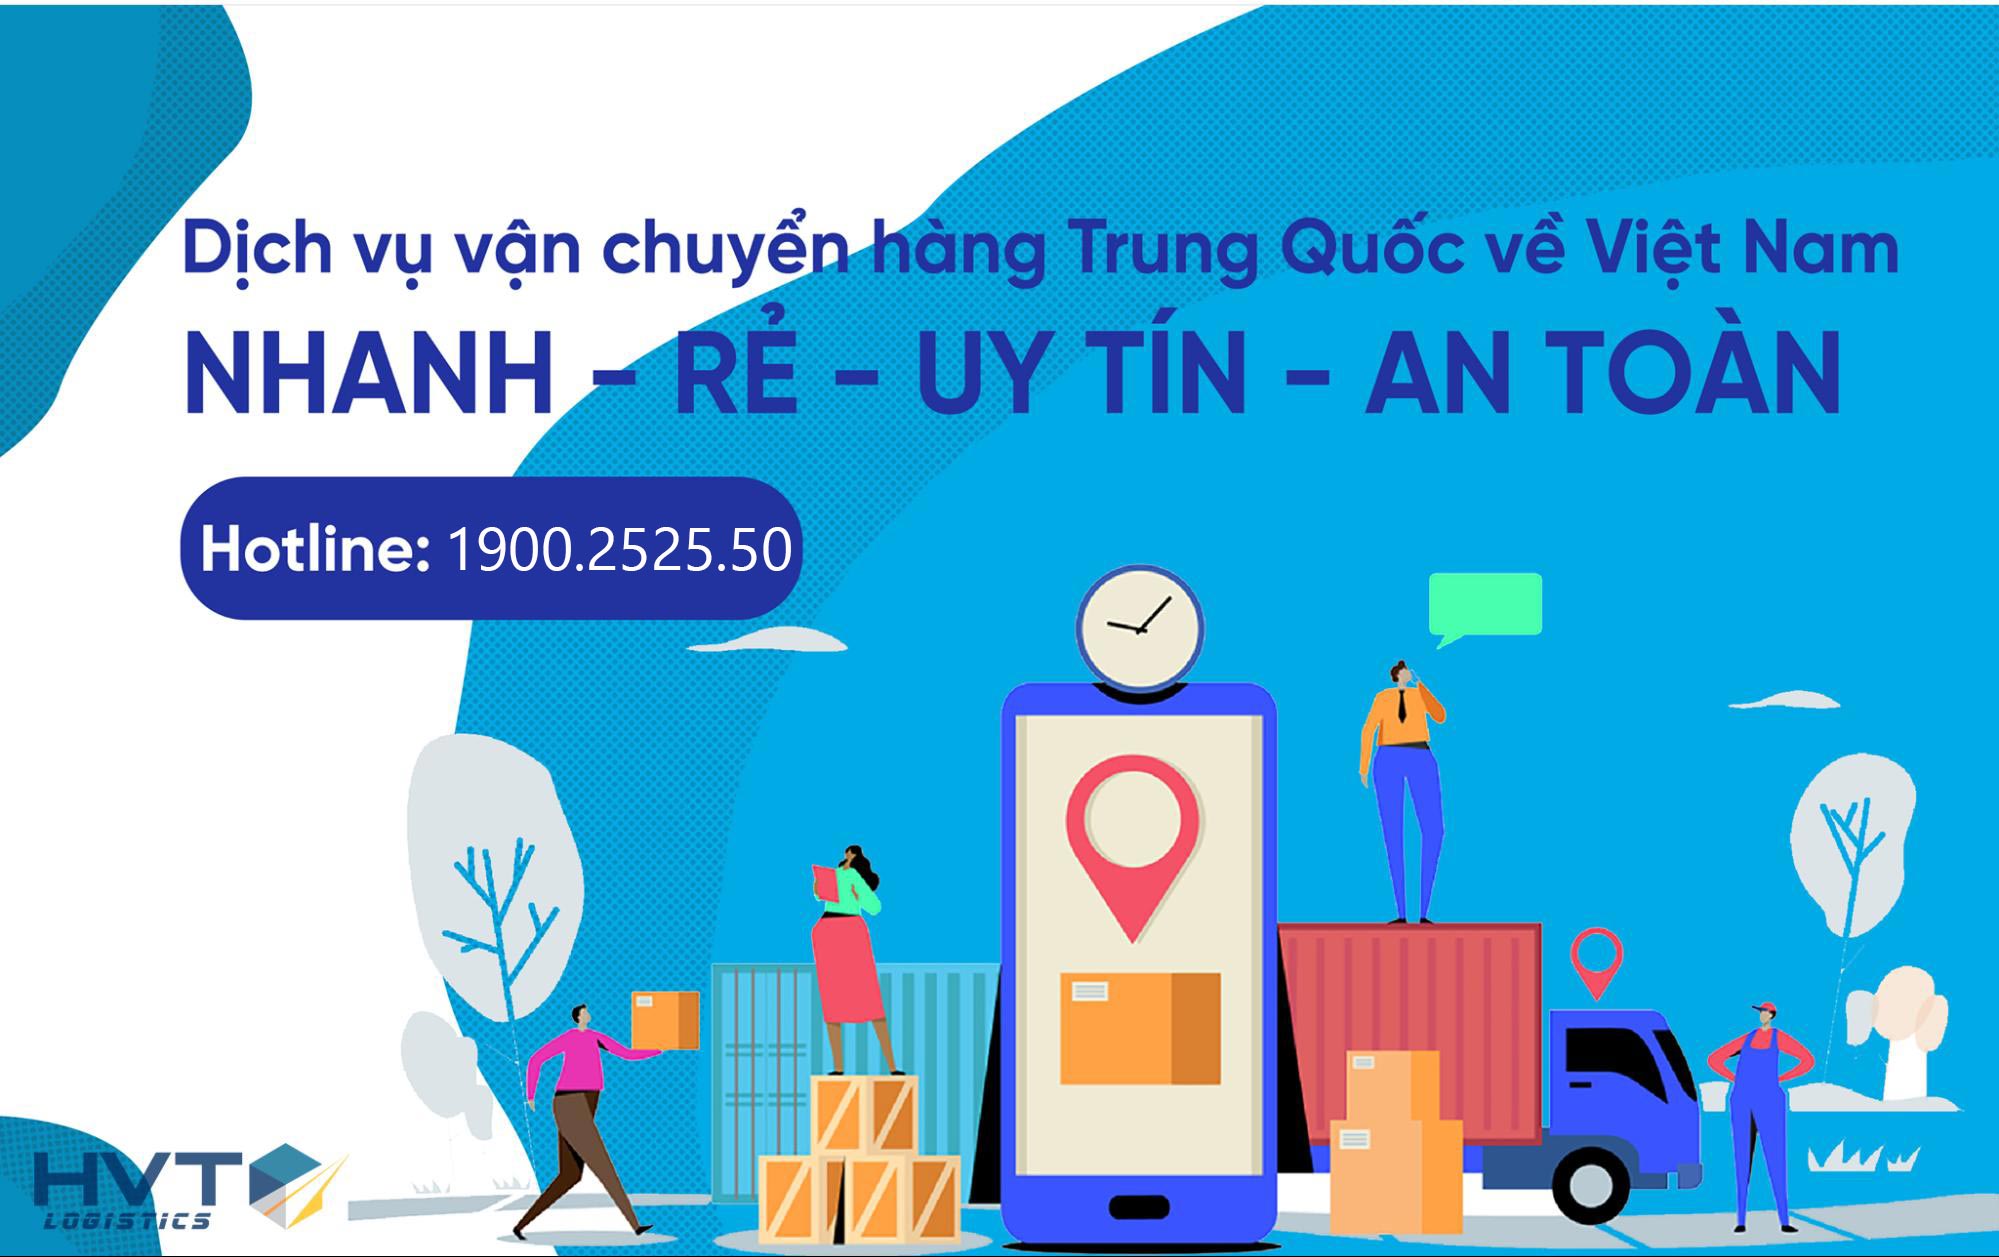 WeLog là một trong những đơn vị cung cấp dịch vụ vận chuyển hàng Trung Quốc về Việt Nam được nhiều người lựa chọn nhất.